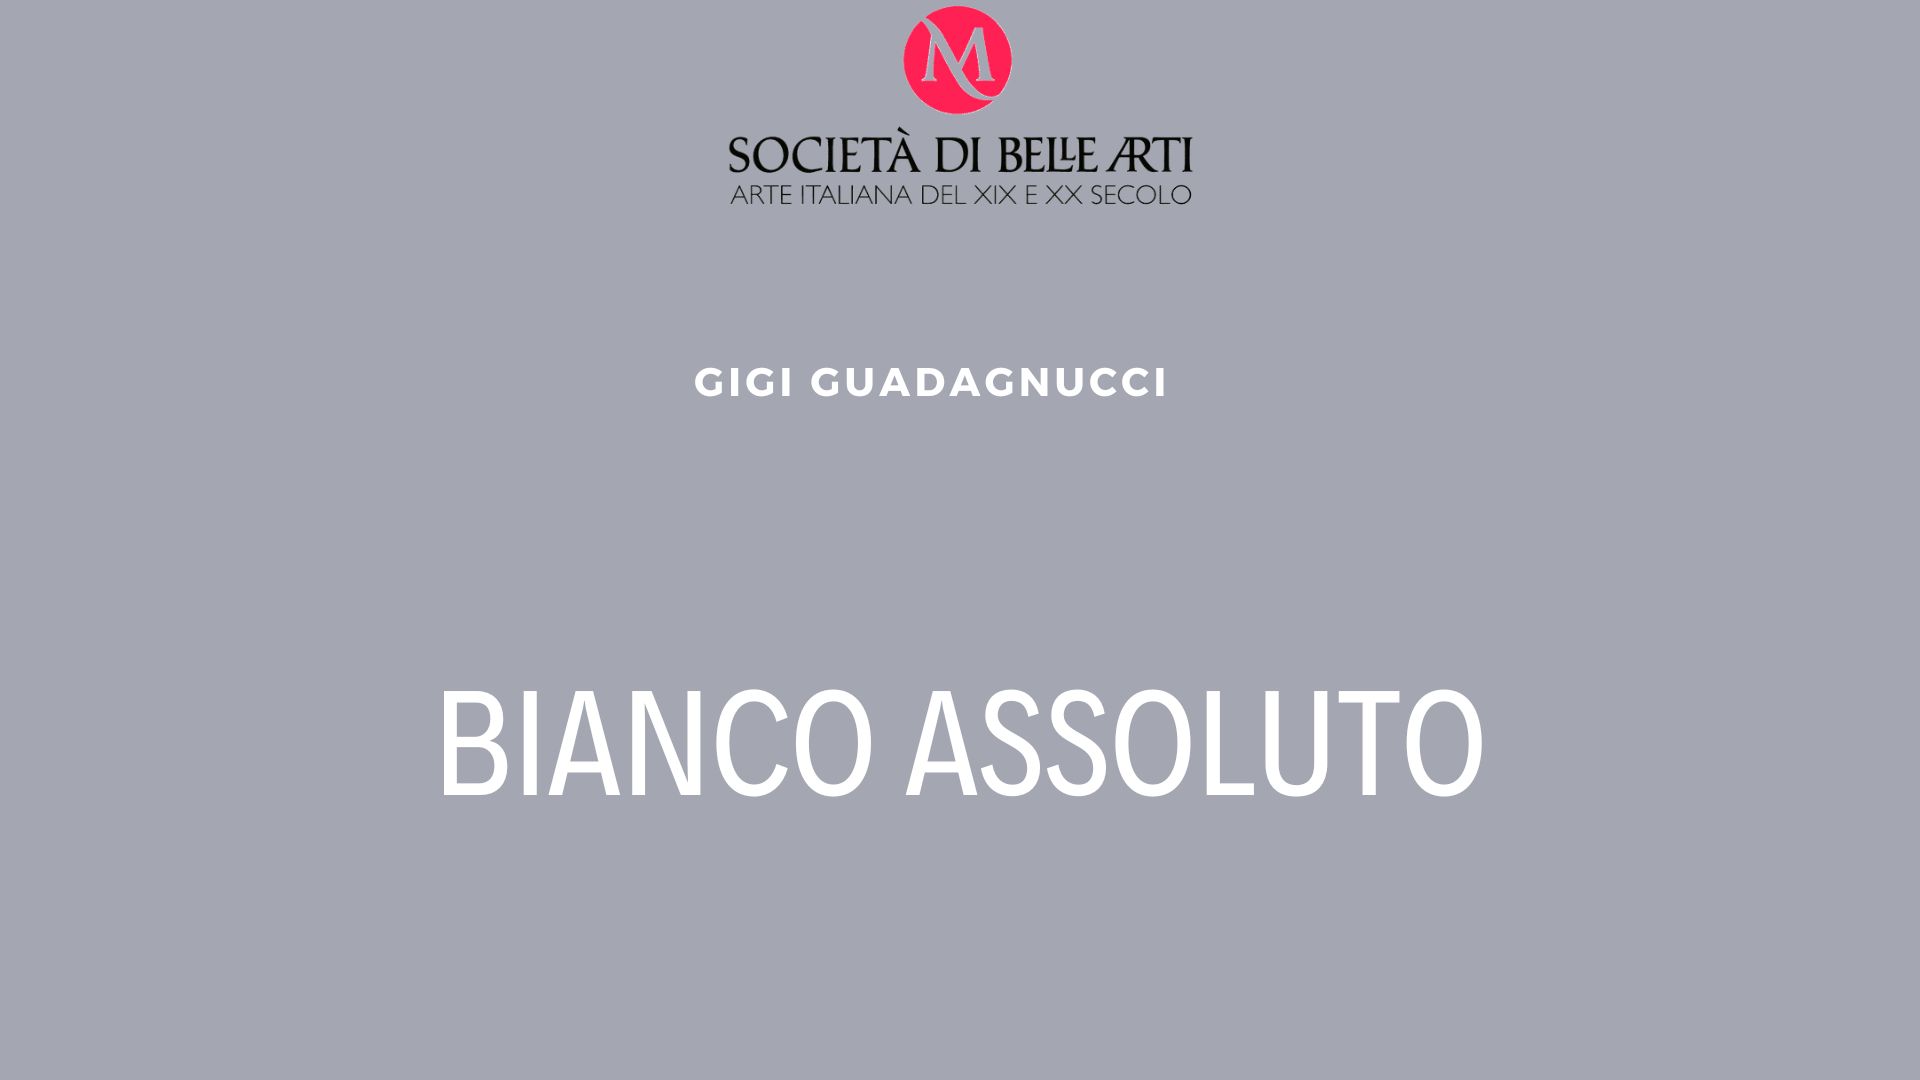 Sculture di Gigi Guadagnucci in esclusiva presso la Società di Belle Arti art gallery